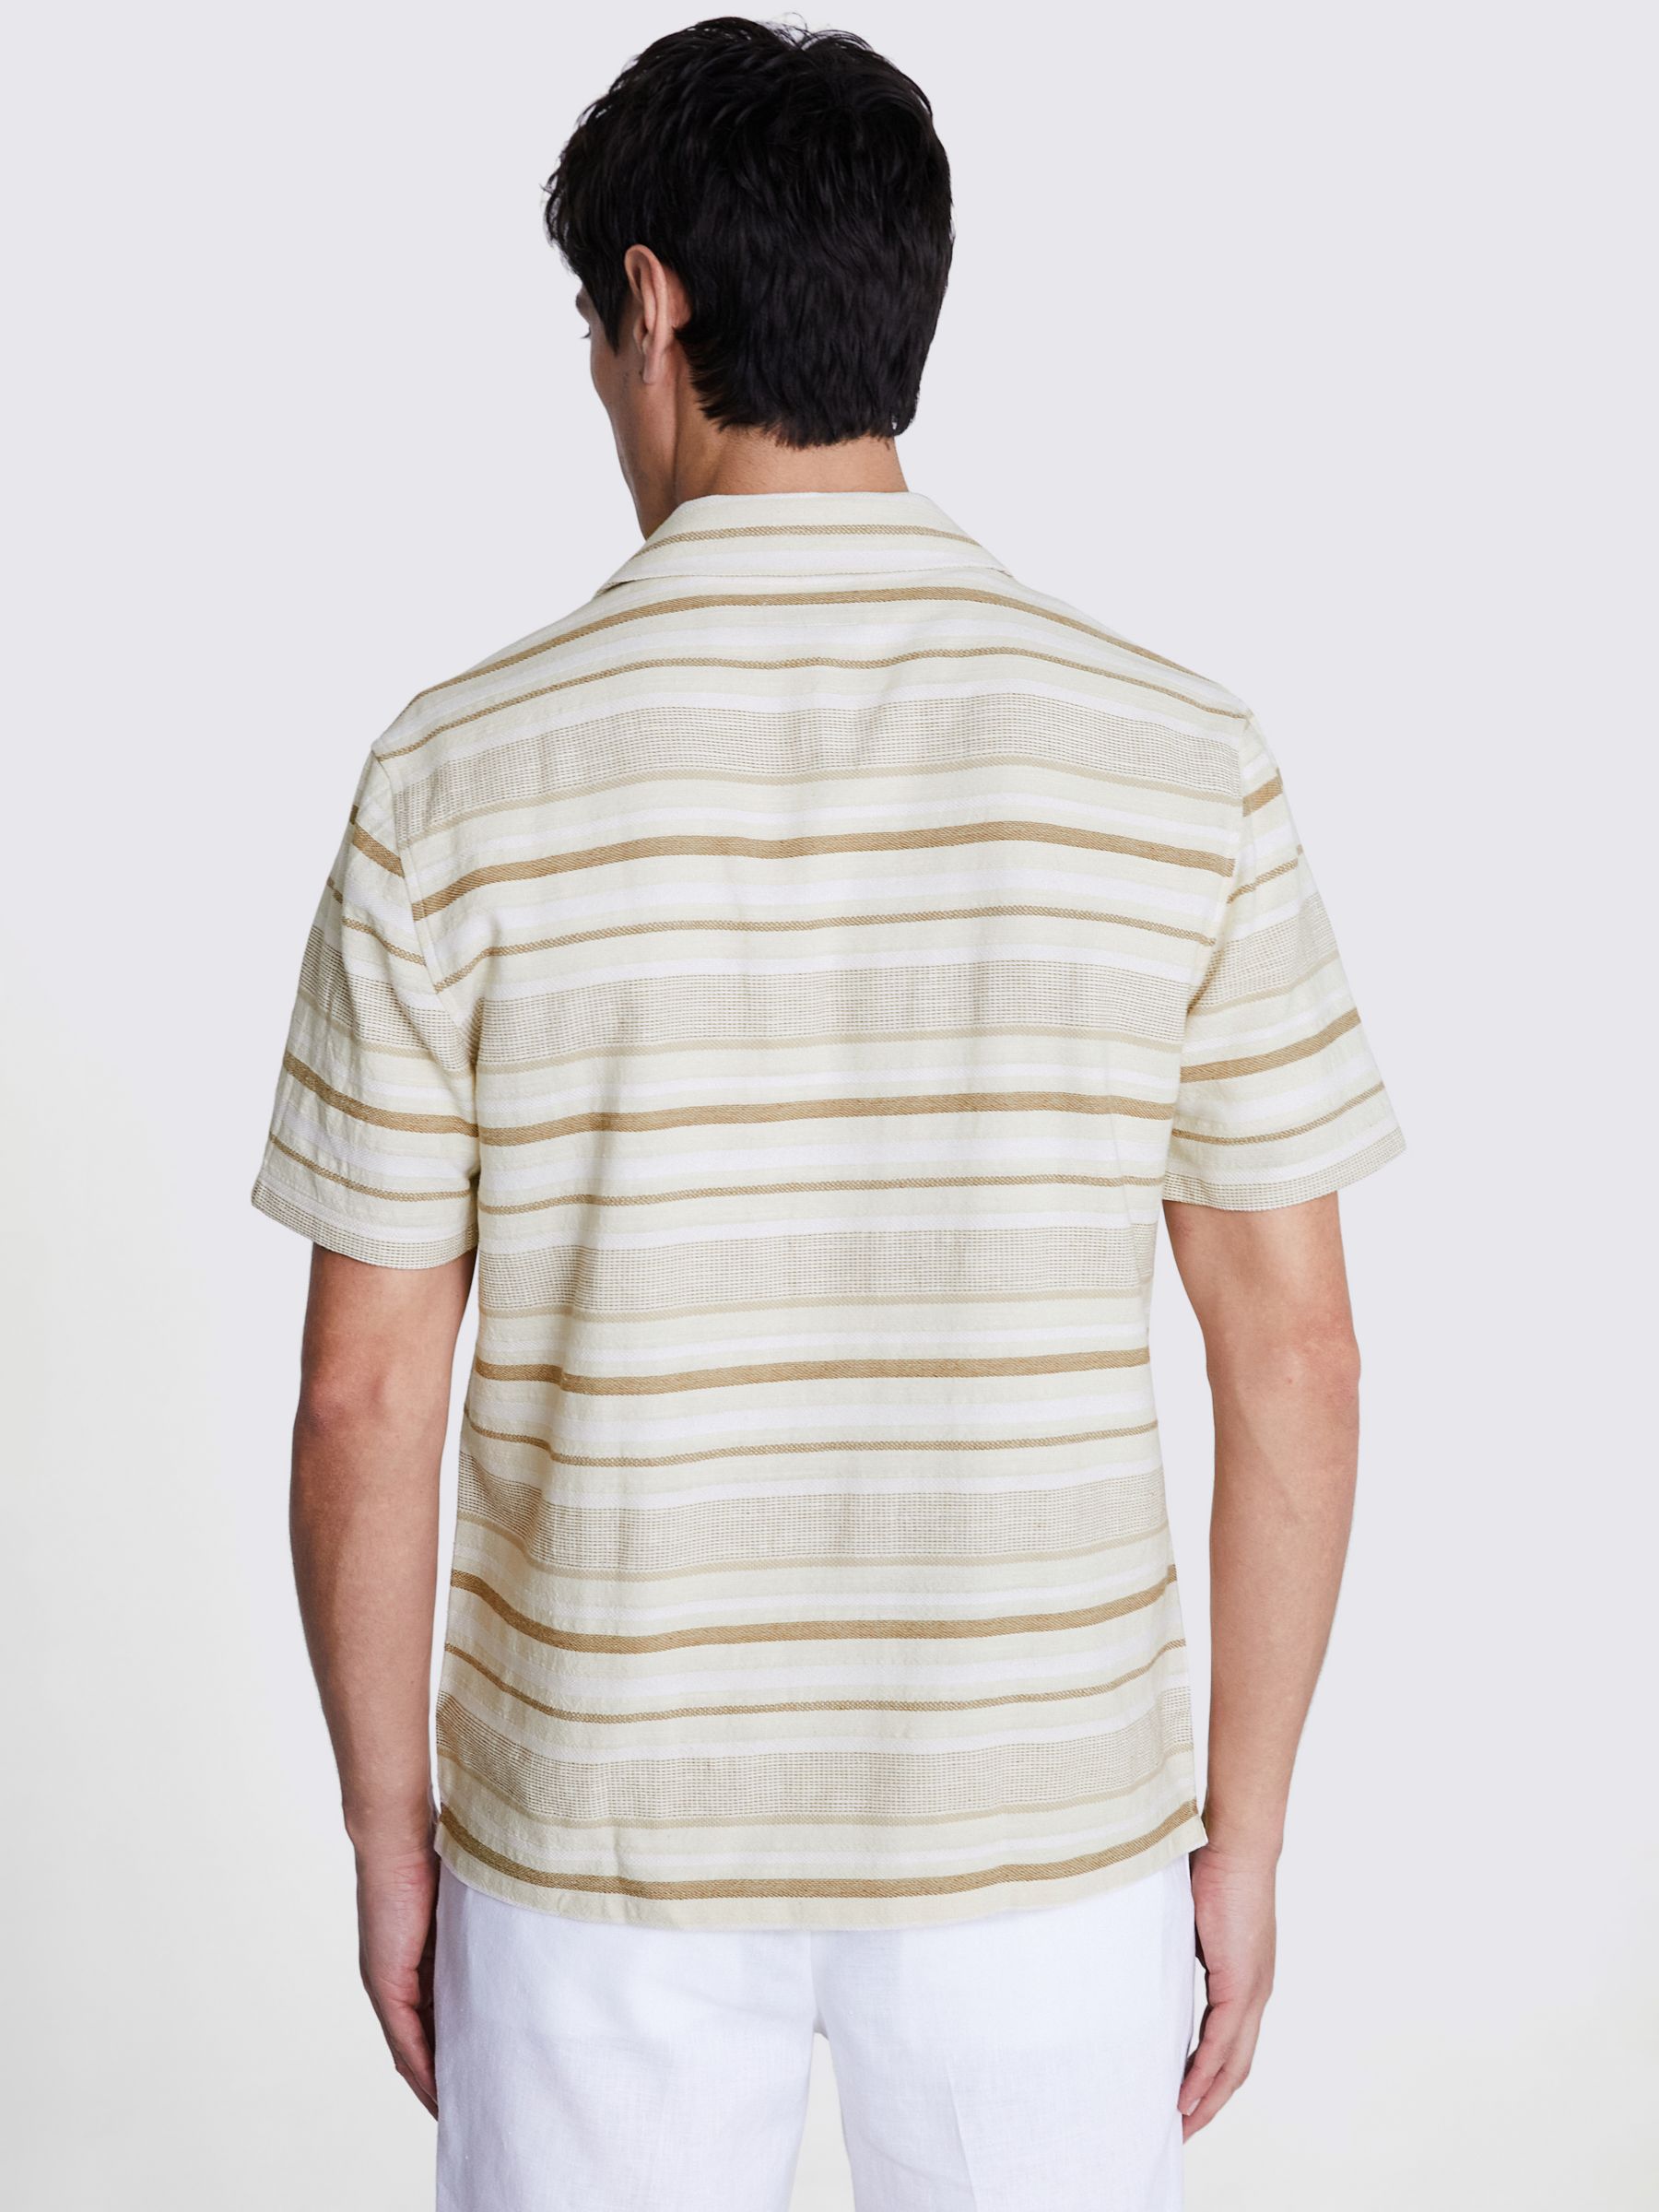 Moss Woven Stripe Cuban Collar Shirt, Beige/Multi, L